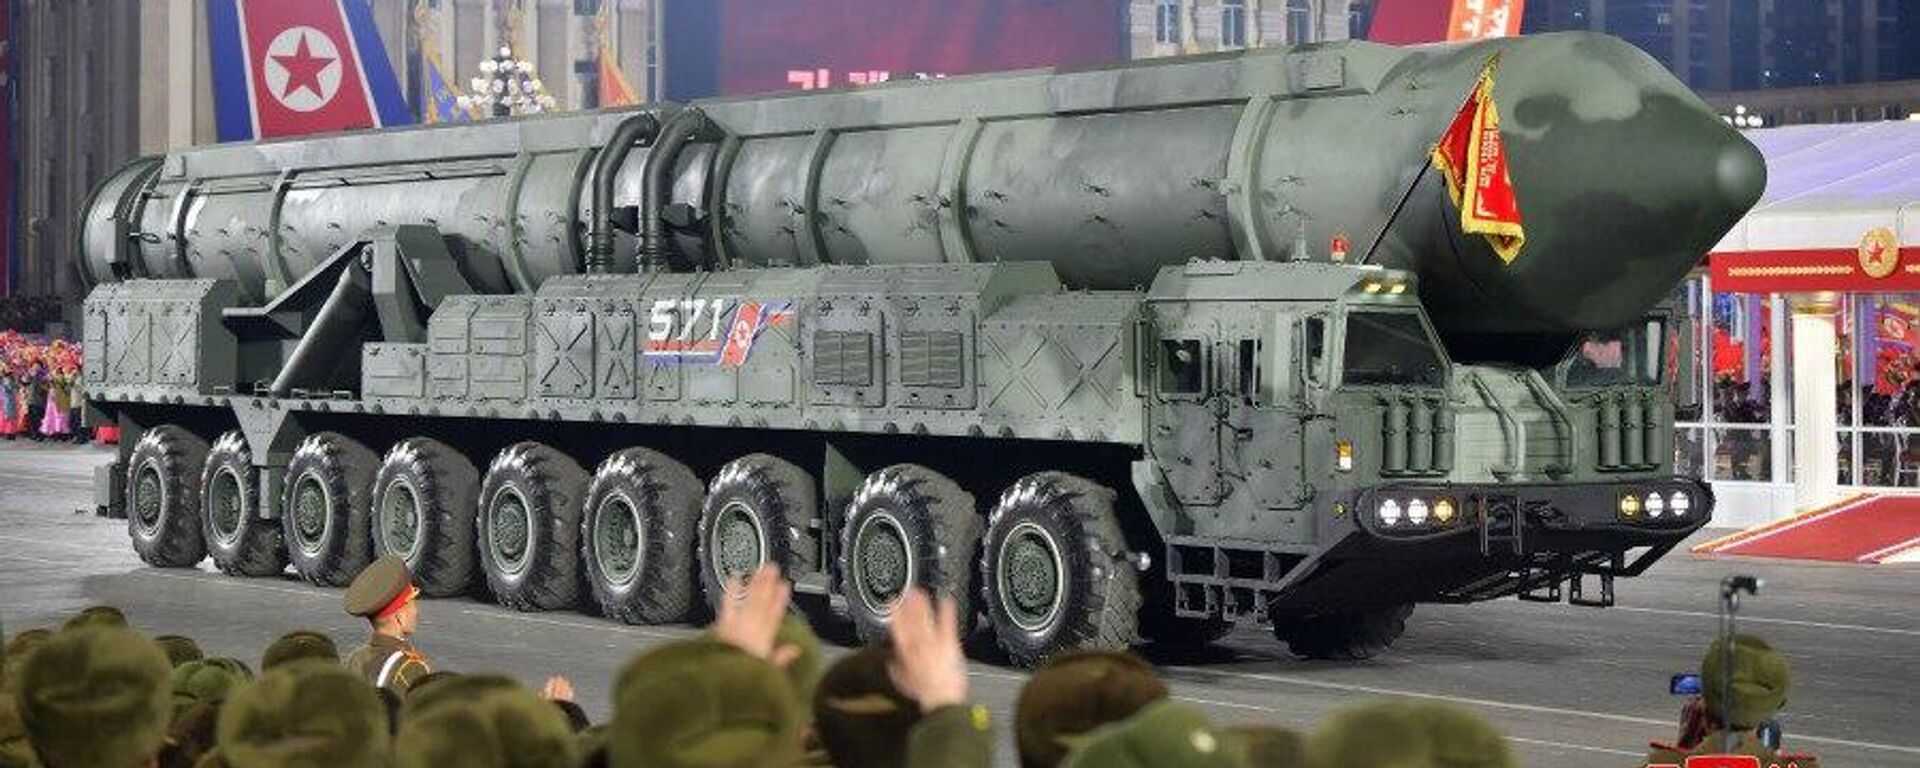 Coreia do Norte comemora 75 anos de seu Exército e mostra possível novo míssil intercontinental durante um grande desfile militar na capital norte-coreana, Pyongyang, em 8 de fevereiro - Sputnik Brasil, 1920, 23.02.2023